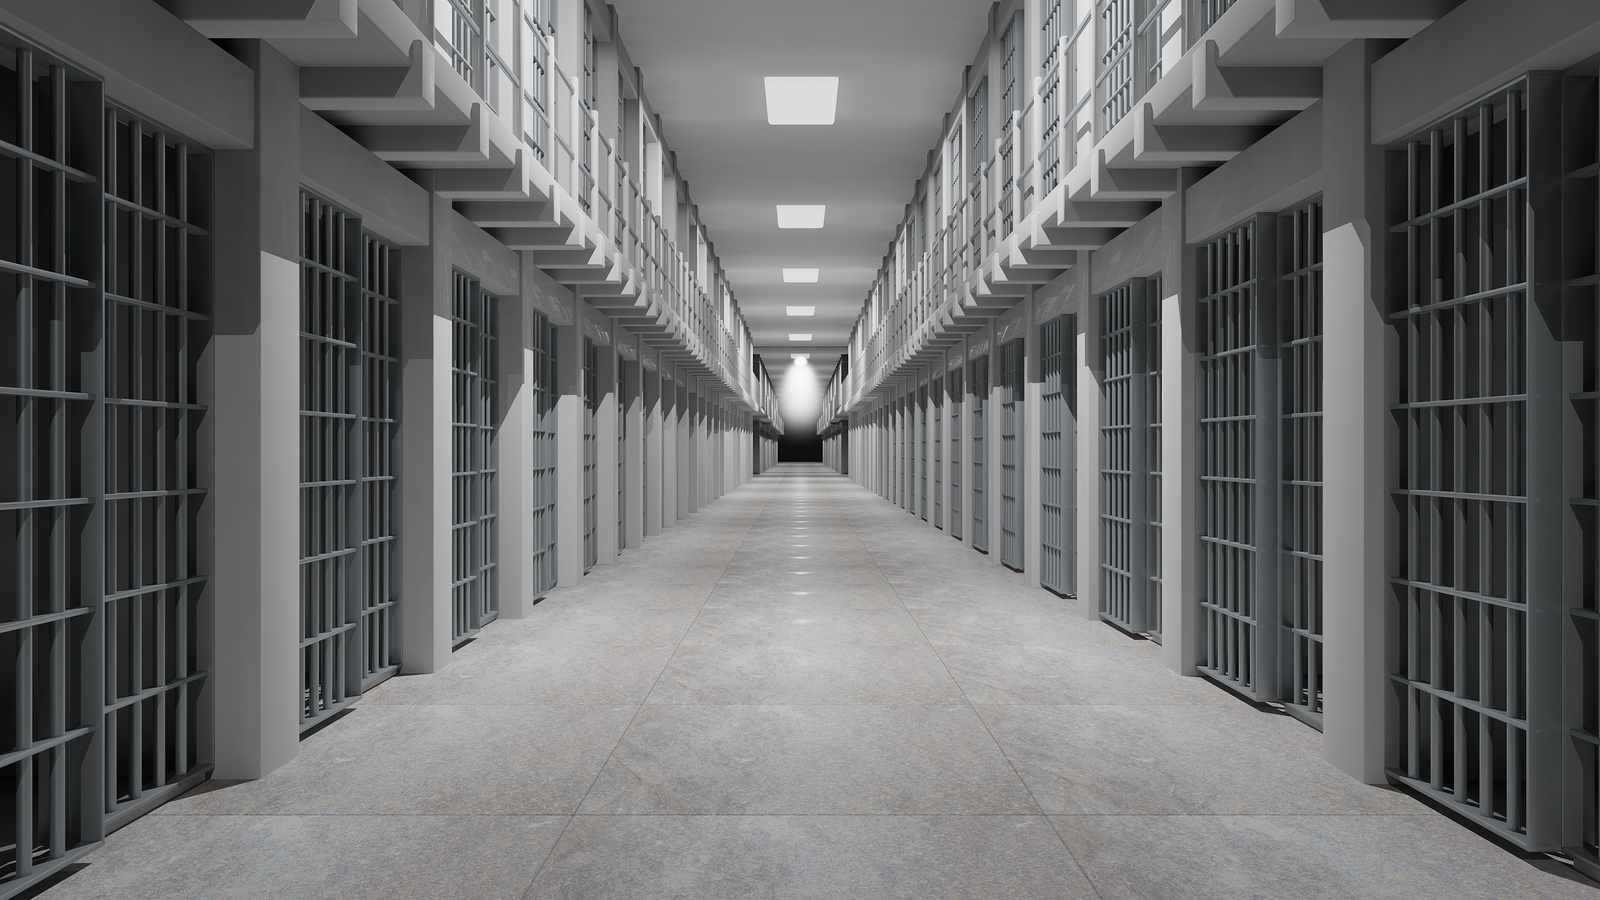 Rows of prison cells, prison interior